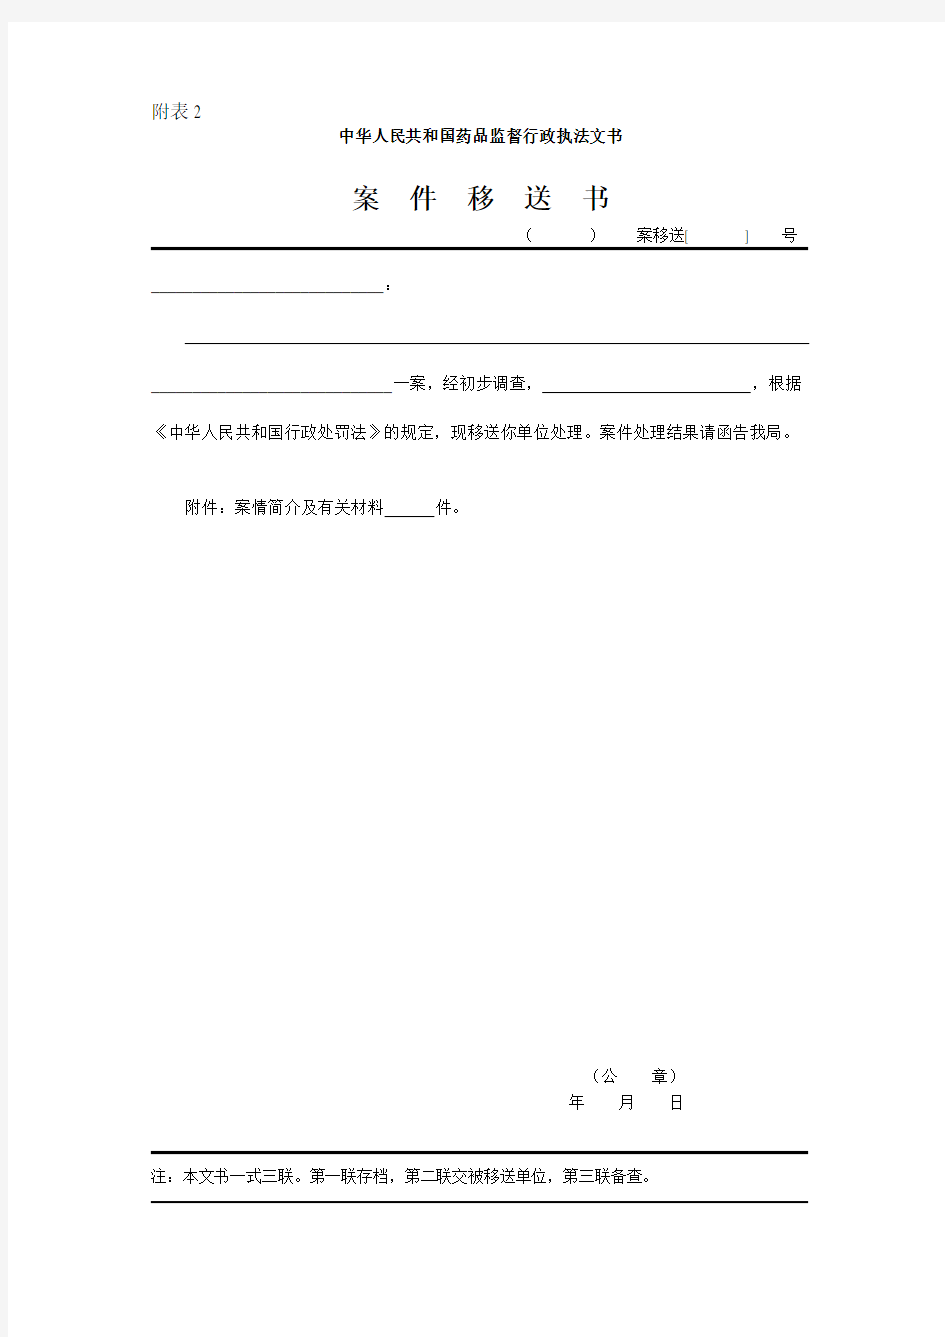 中华人民共和国药品监督行政执法文书(卫生部88号令附表